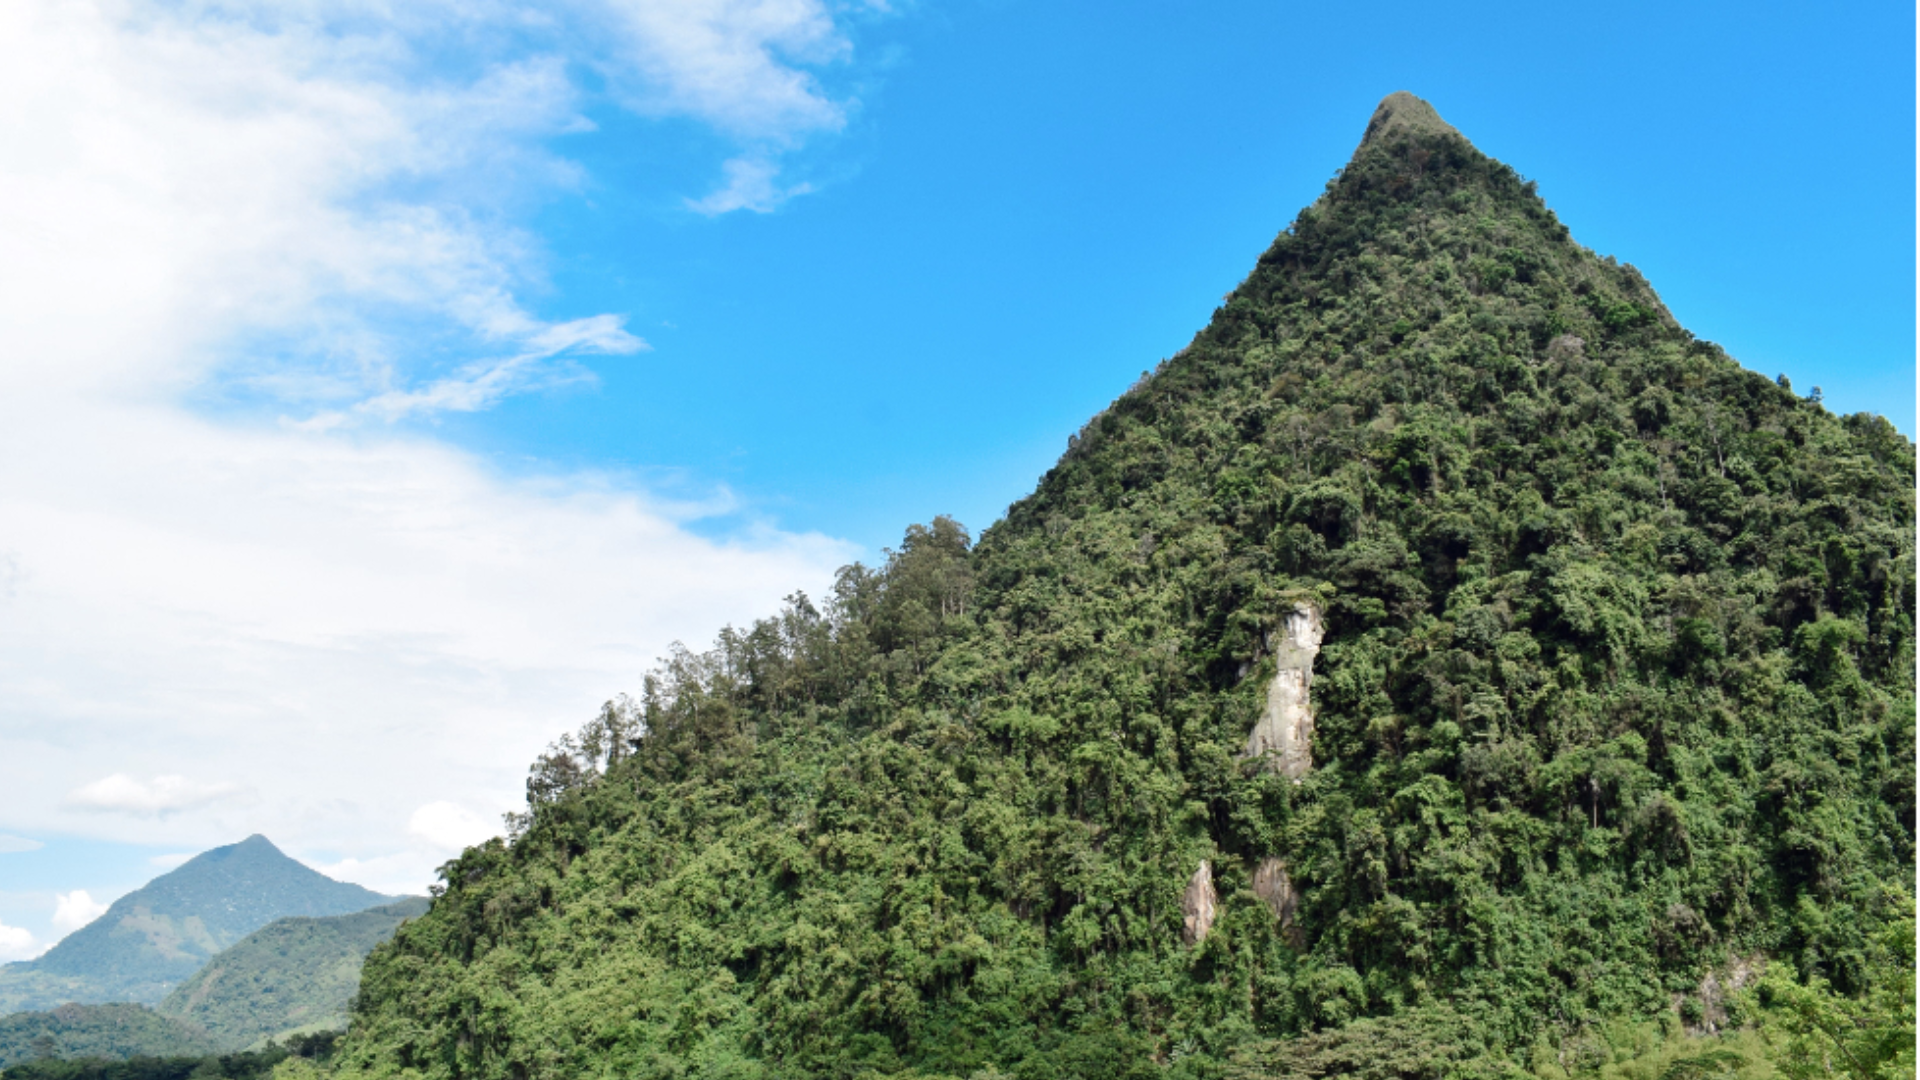 En el corazón de Antioquia, Colombia, se alza majestuoso un tesoro natural que ha cautivado a locales y extranjeros: el Cerro Tusa. Con sus casi 2.000 metros de altura y su forma piramidal, este coloso natural se ha ganado el título de la pirámide natural más alta del mundo.